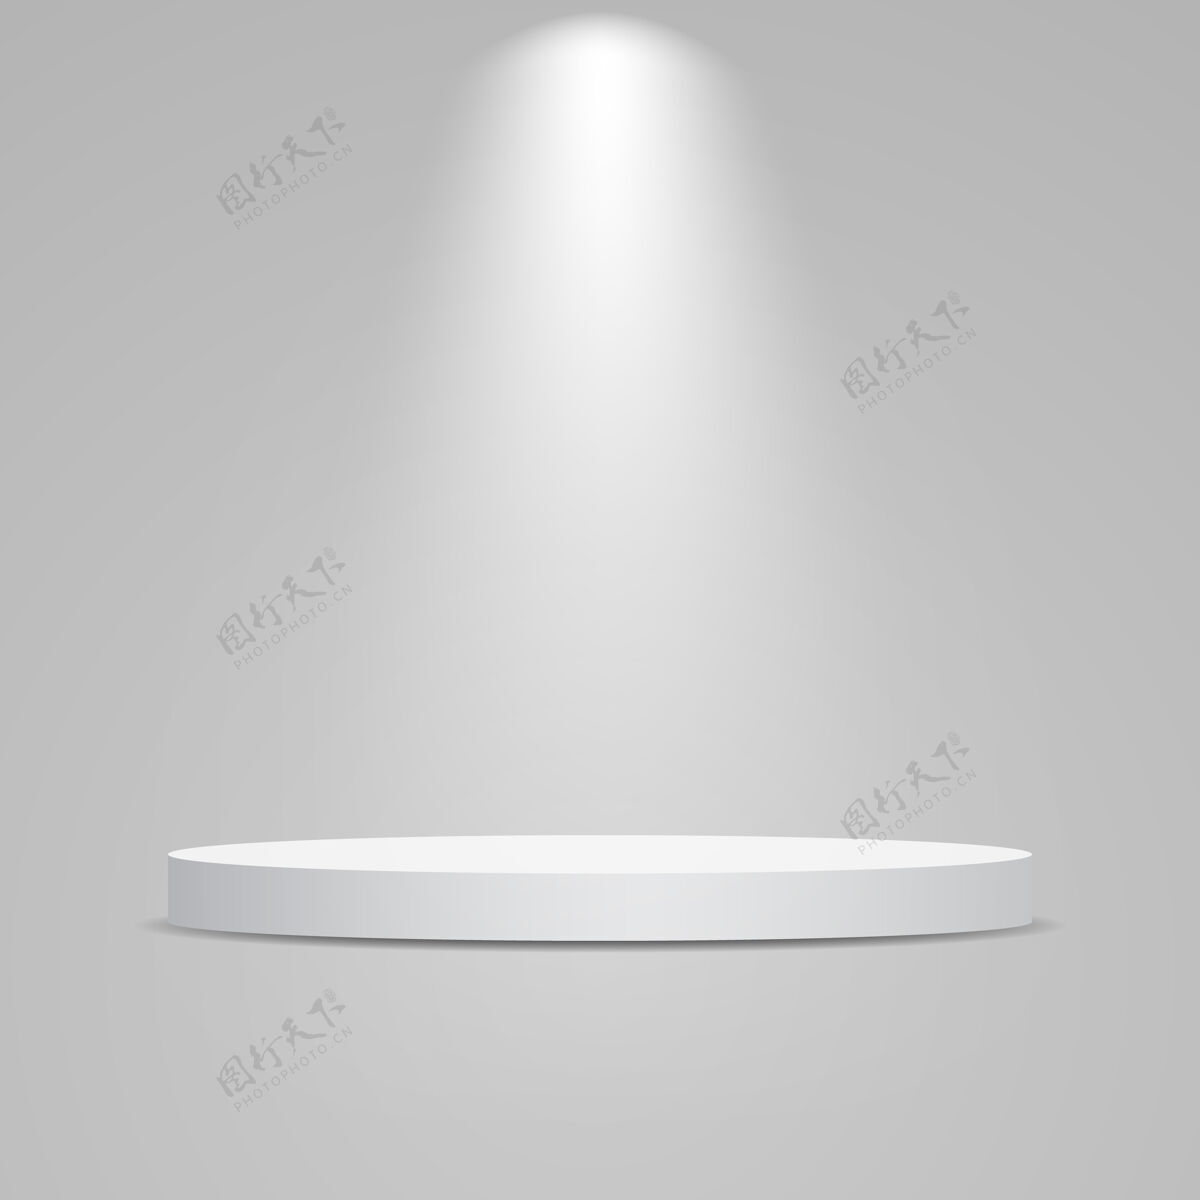 效果白色圆形讲台 灯光照明产品展示基座照明探照灯明亮